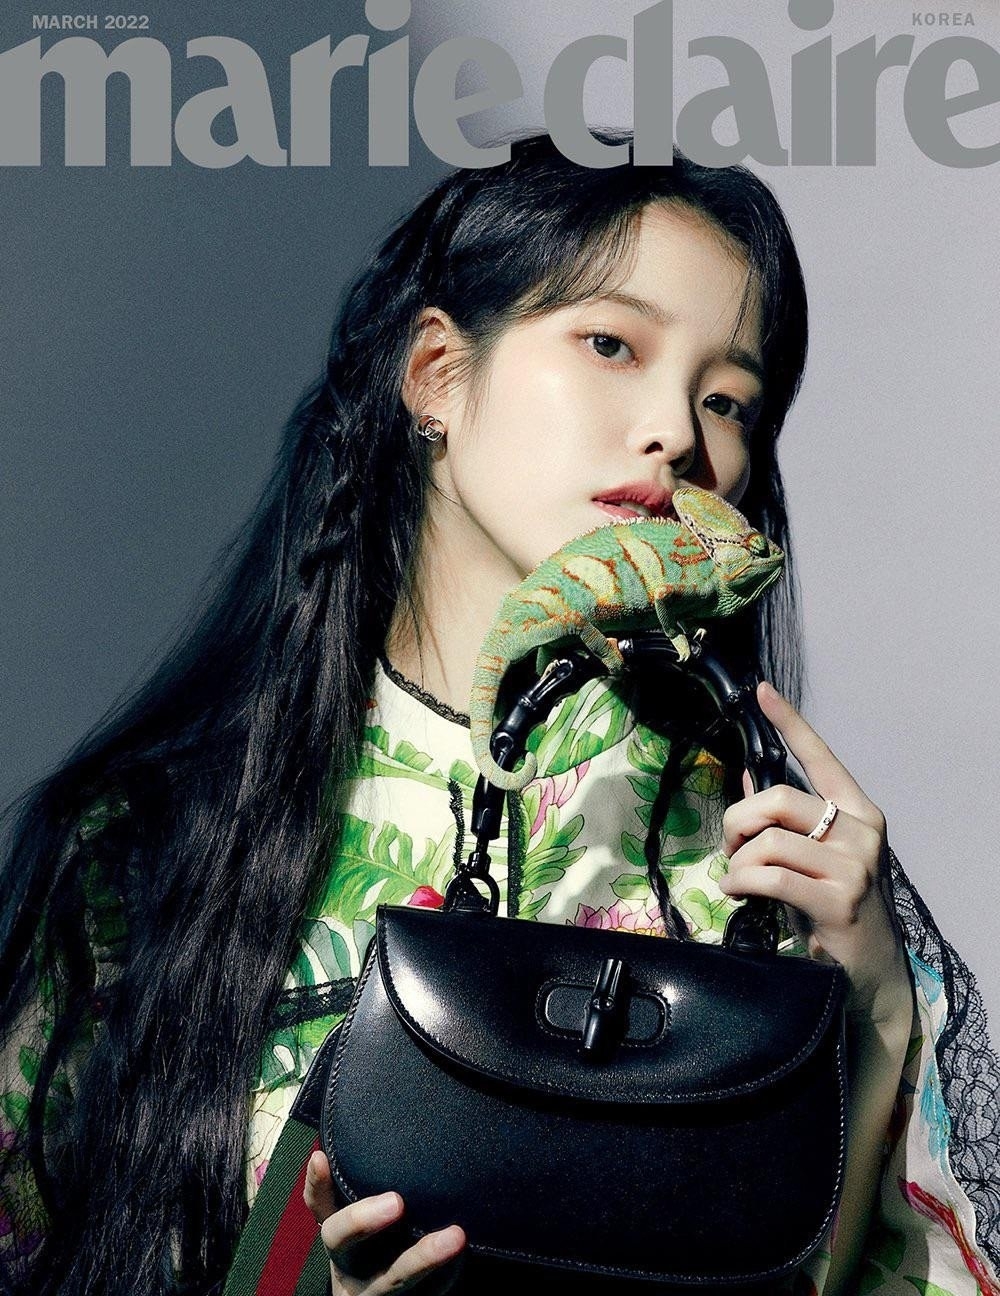 Sao Hàn ngày 16/2/2022: IU diện đồ Gucci sang trọng, thời thượng trên trang bìa tạp chí “Marie Claire”